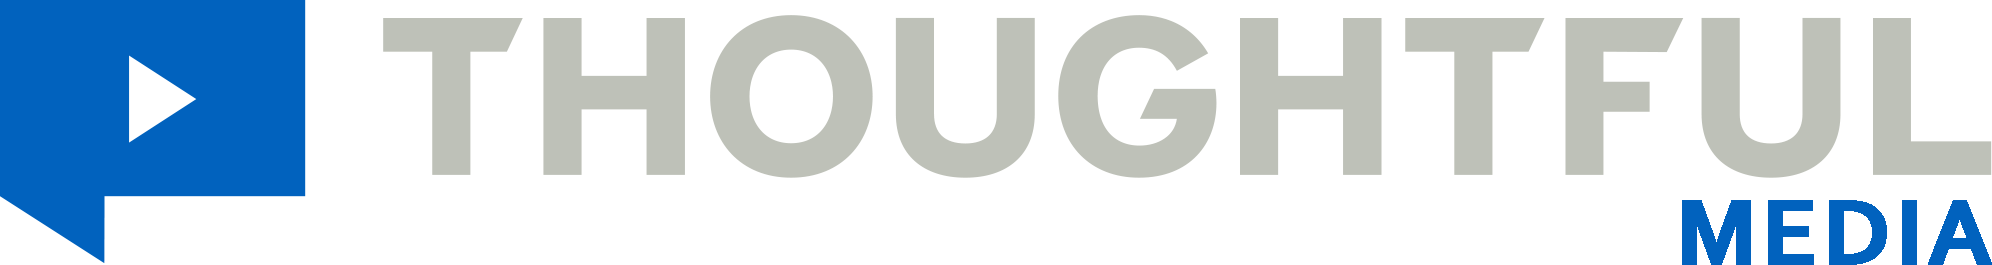 Thoughtful Media logo